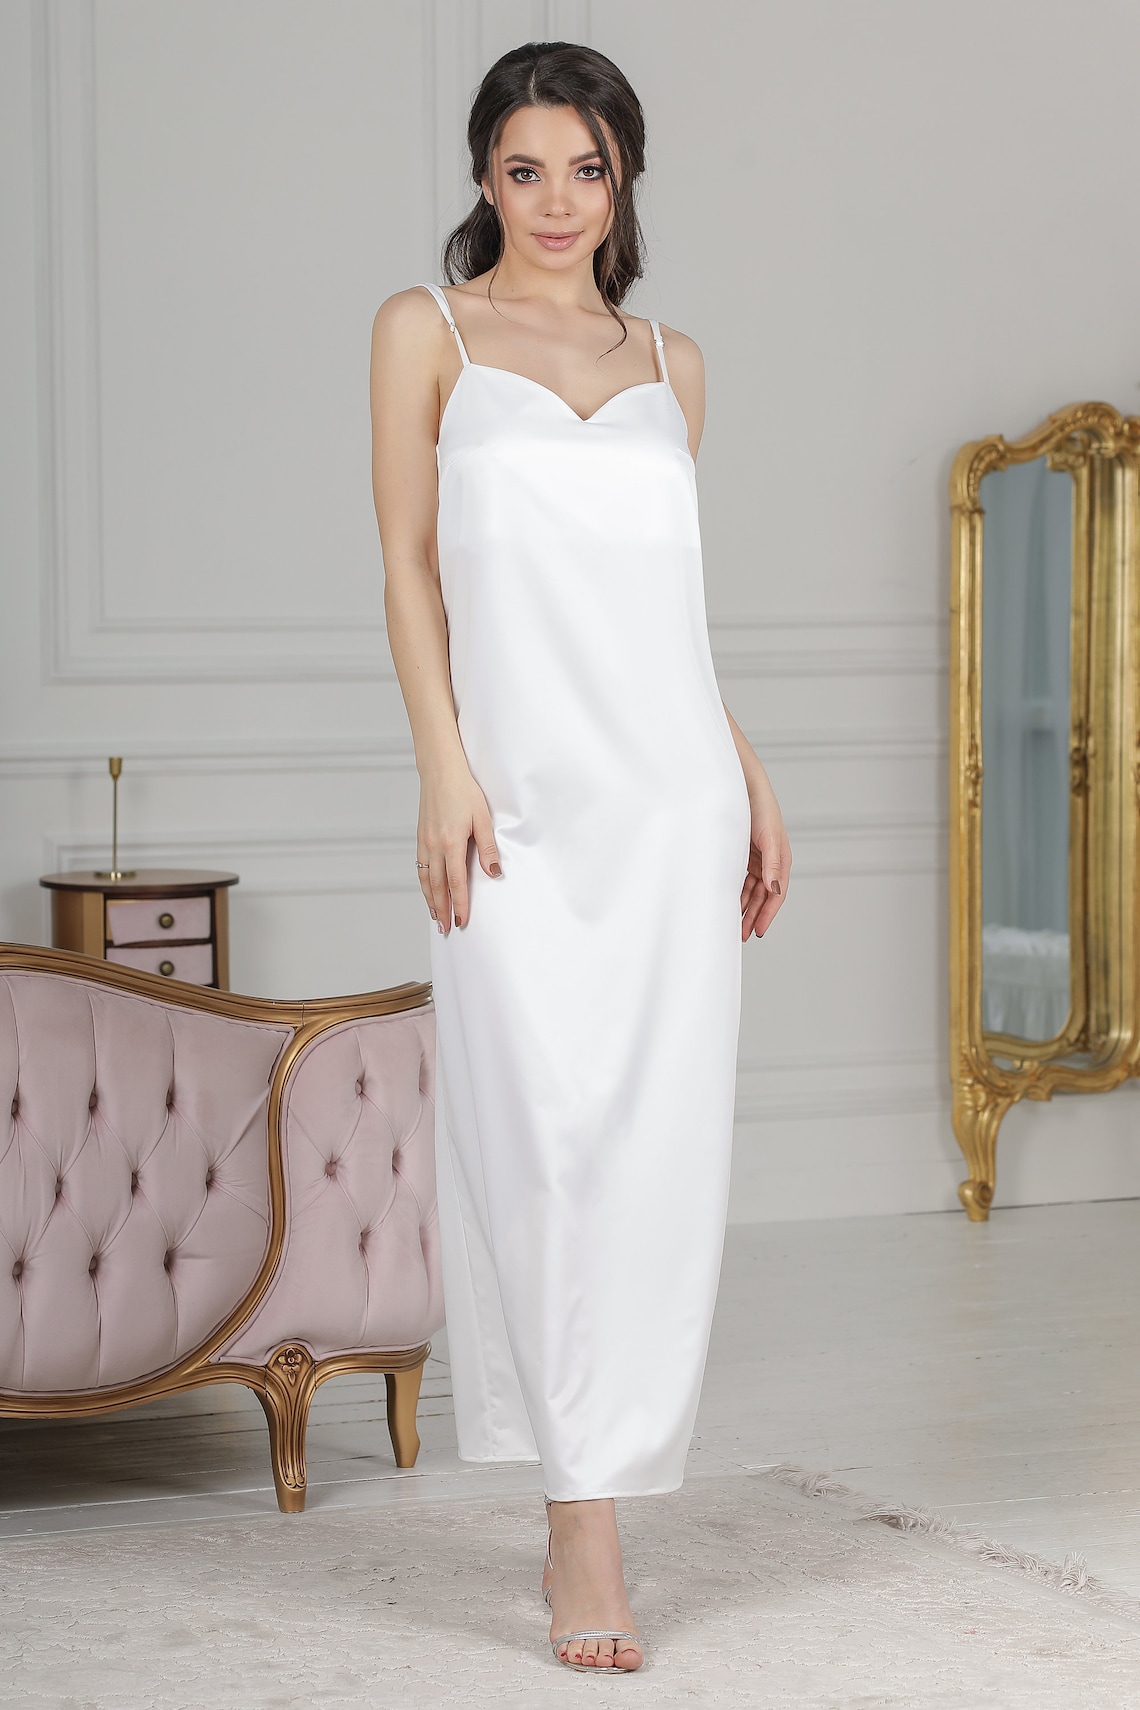 Nightgown White Long Satin Nightwear Women Silk Sleepwear Etsy